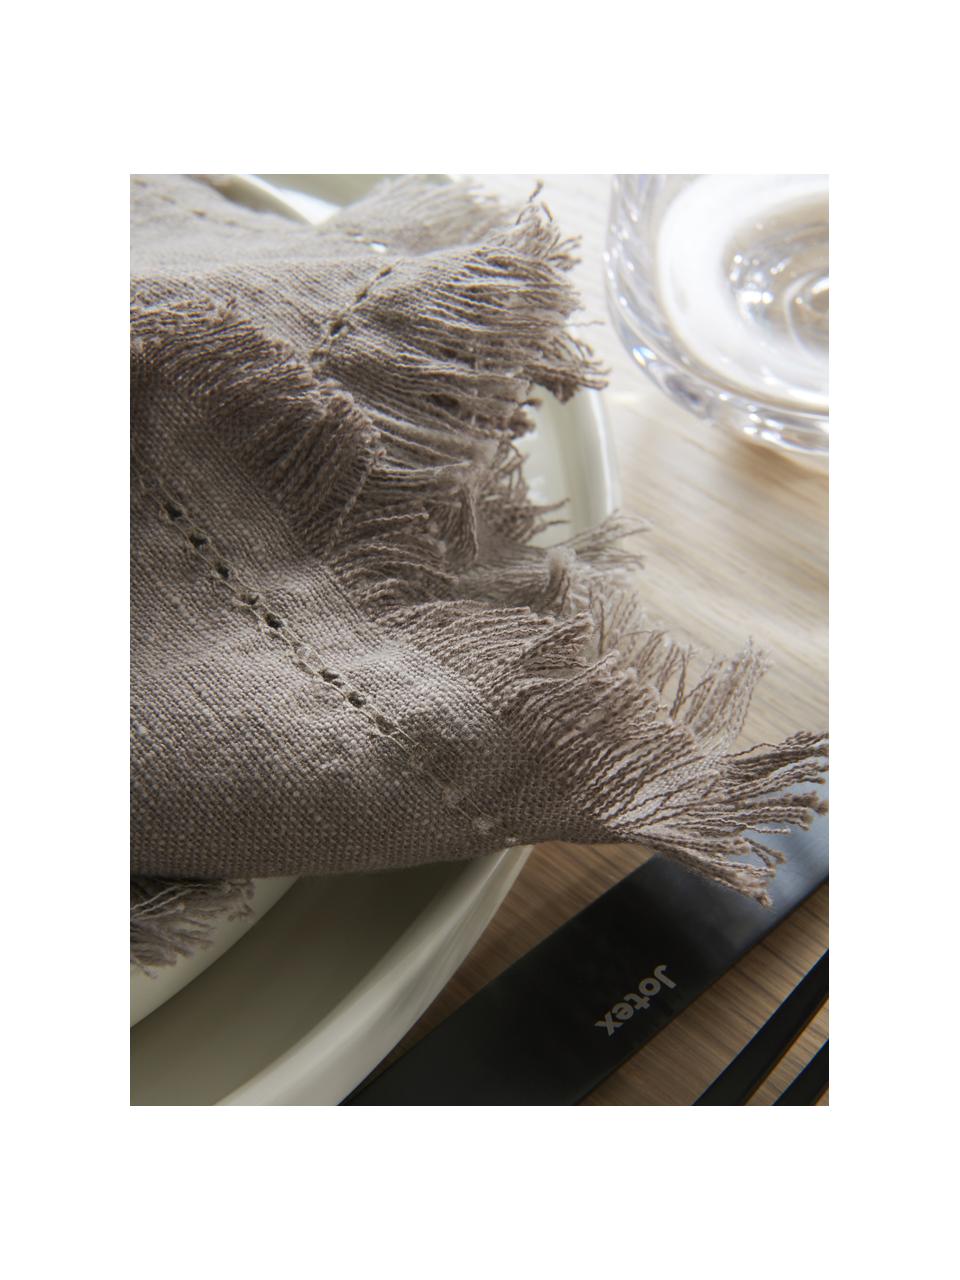 Serwetka z bawełny Henley, 2 szt., 100% bawełna, Greige, S 45 x D 45 cm